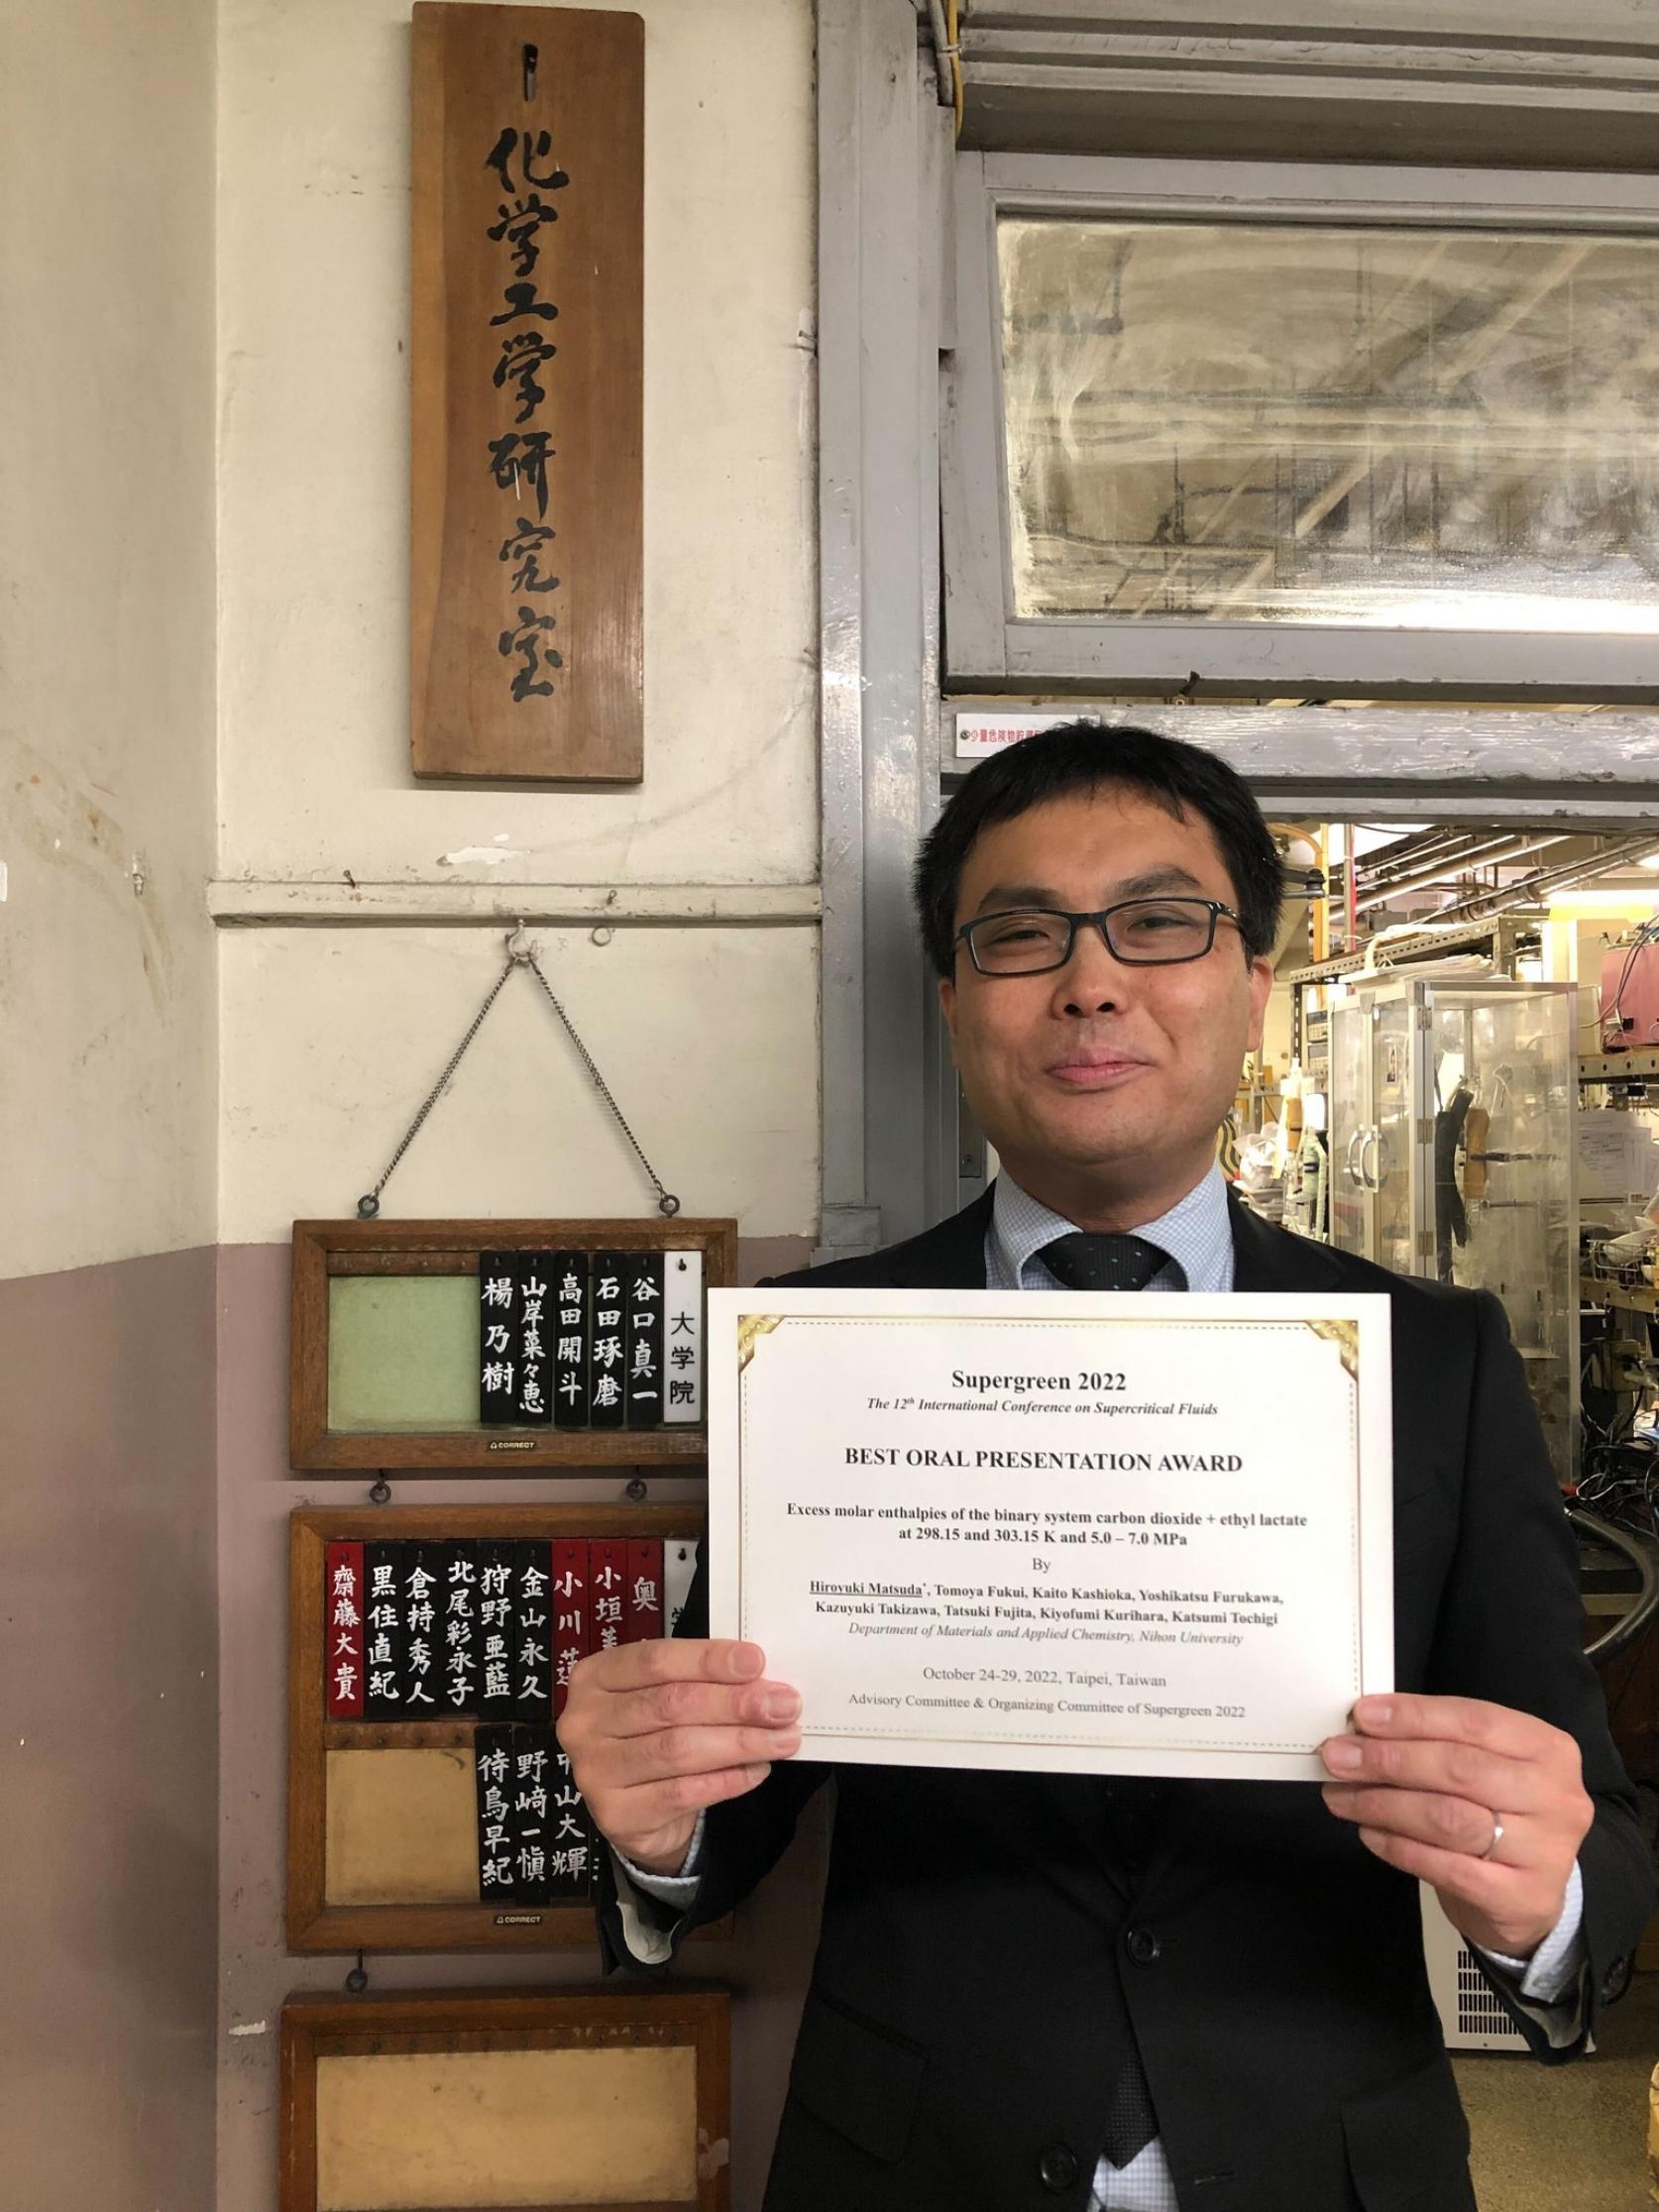 物質応用化学科 松田弘幸教授が、「The 12th International Conference on Superctirical Fluids (Supergreen 2022)」において、「Best Oral Presentation Award」を受賞しました。